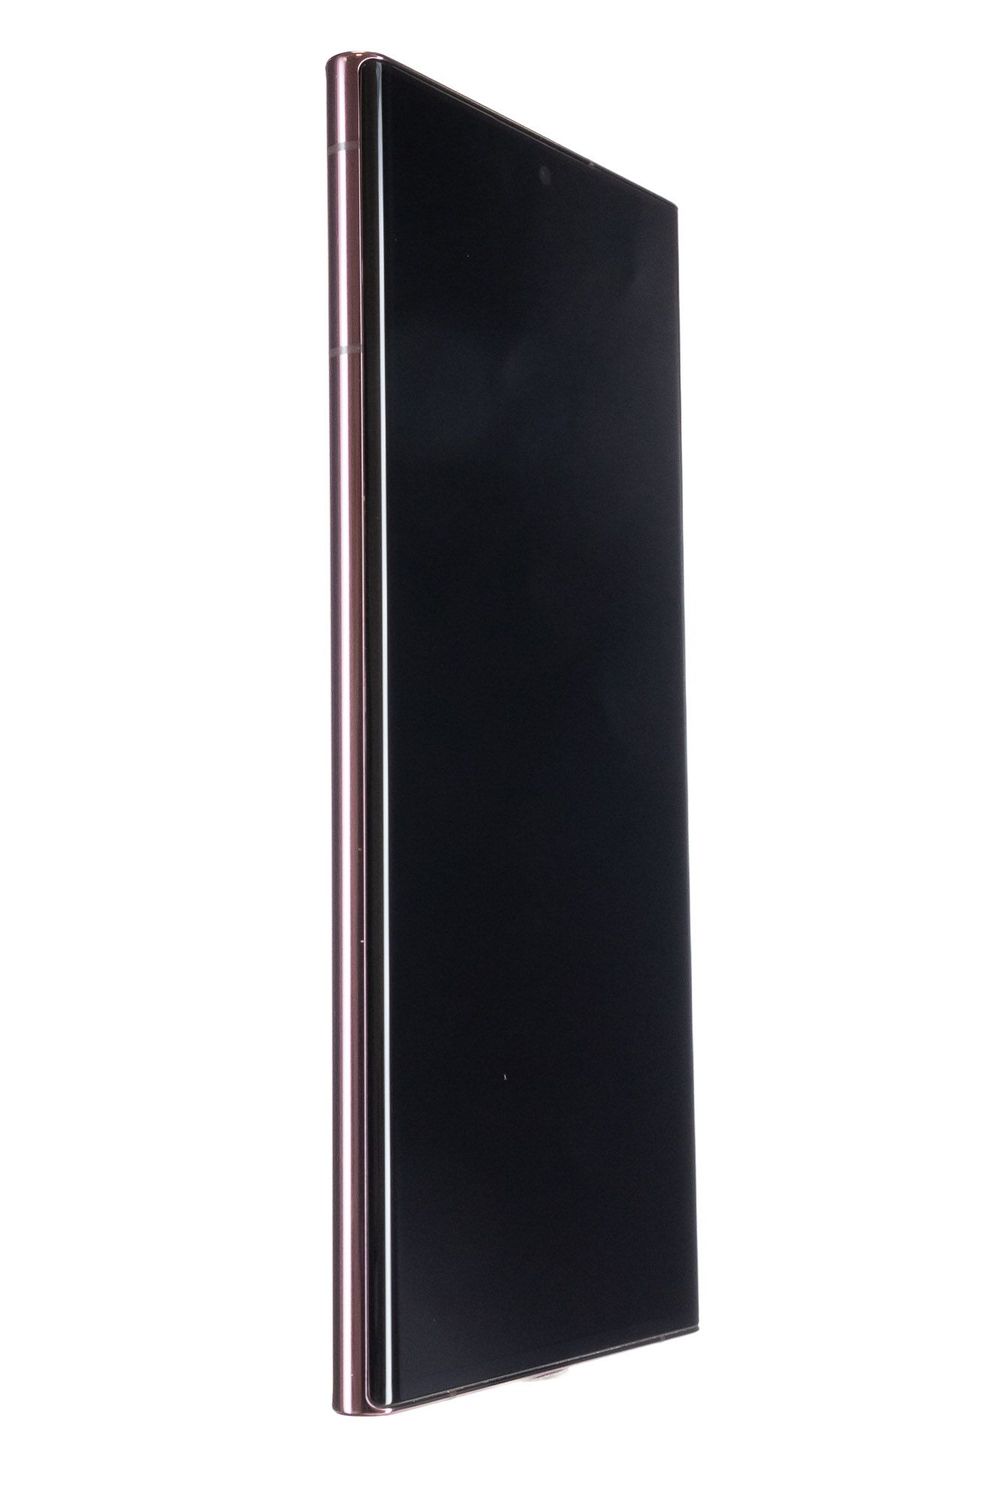 Κινητό τηλέφωνο Samsung Galaxy S22 Ultra 5G, Burgundy, 256 GB, Foarte Bun